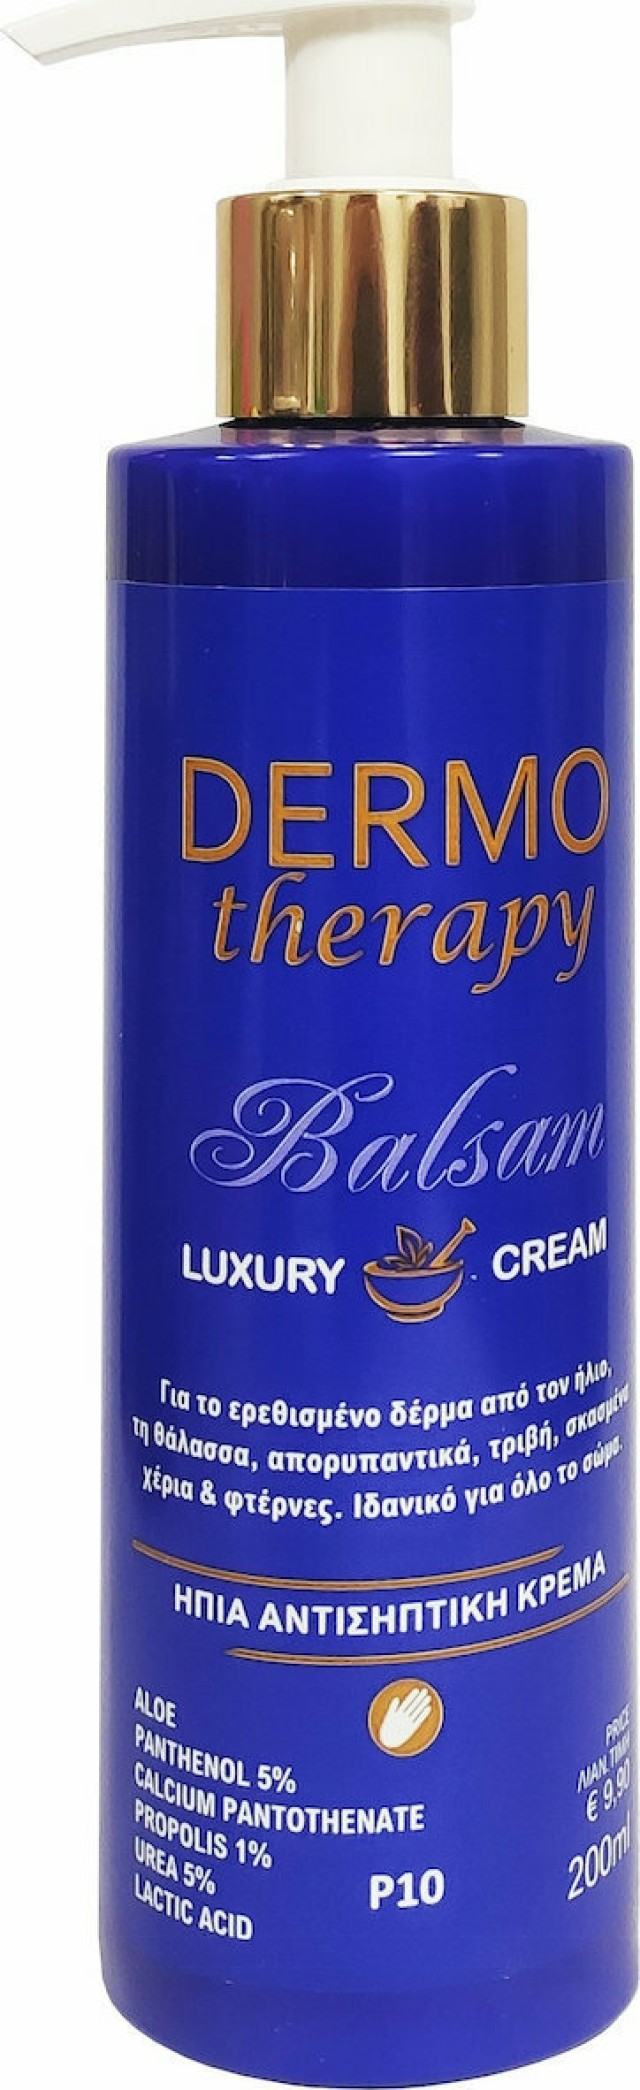 Erythro Forte Dermo Therapy Balsam Luxury Cream Αντισηπτική Κρέμα Σώματος για Μετά τον Ήλιο 200ml